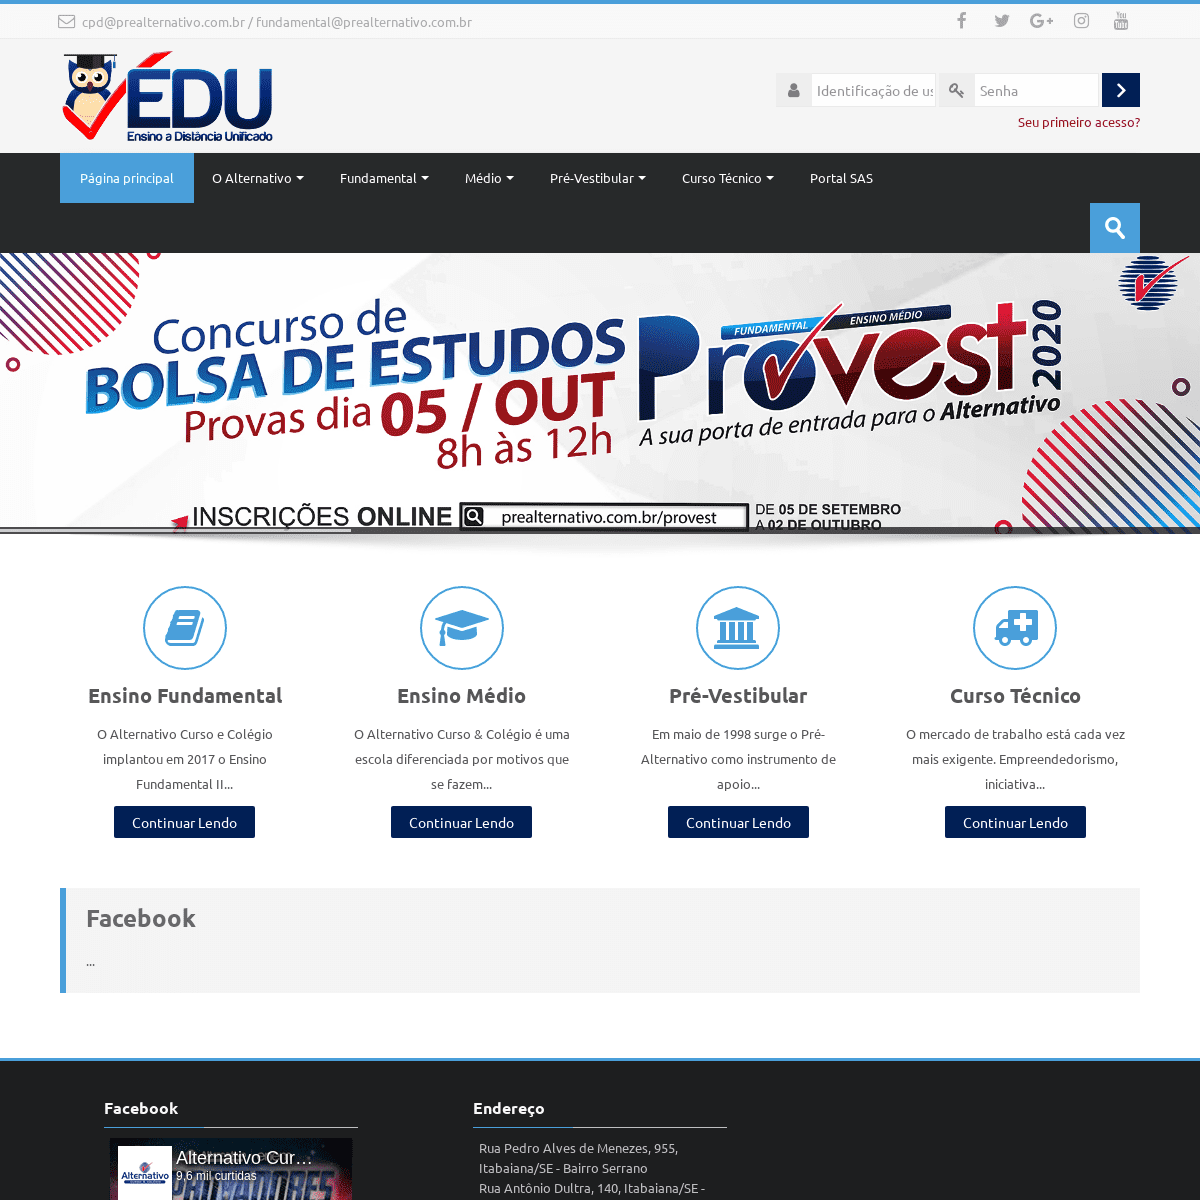 A complete backup of edualternativo.com.br